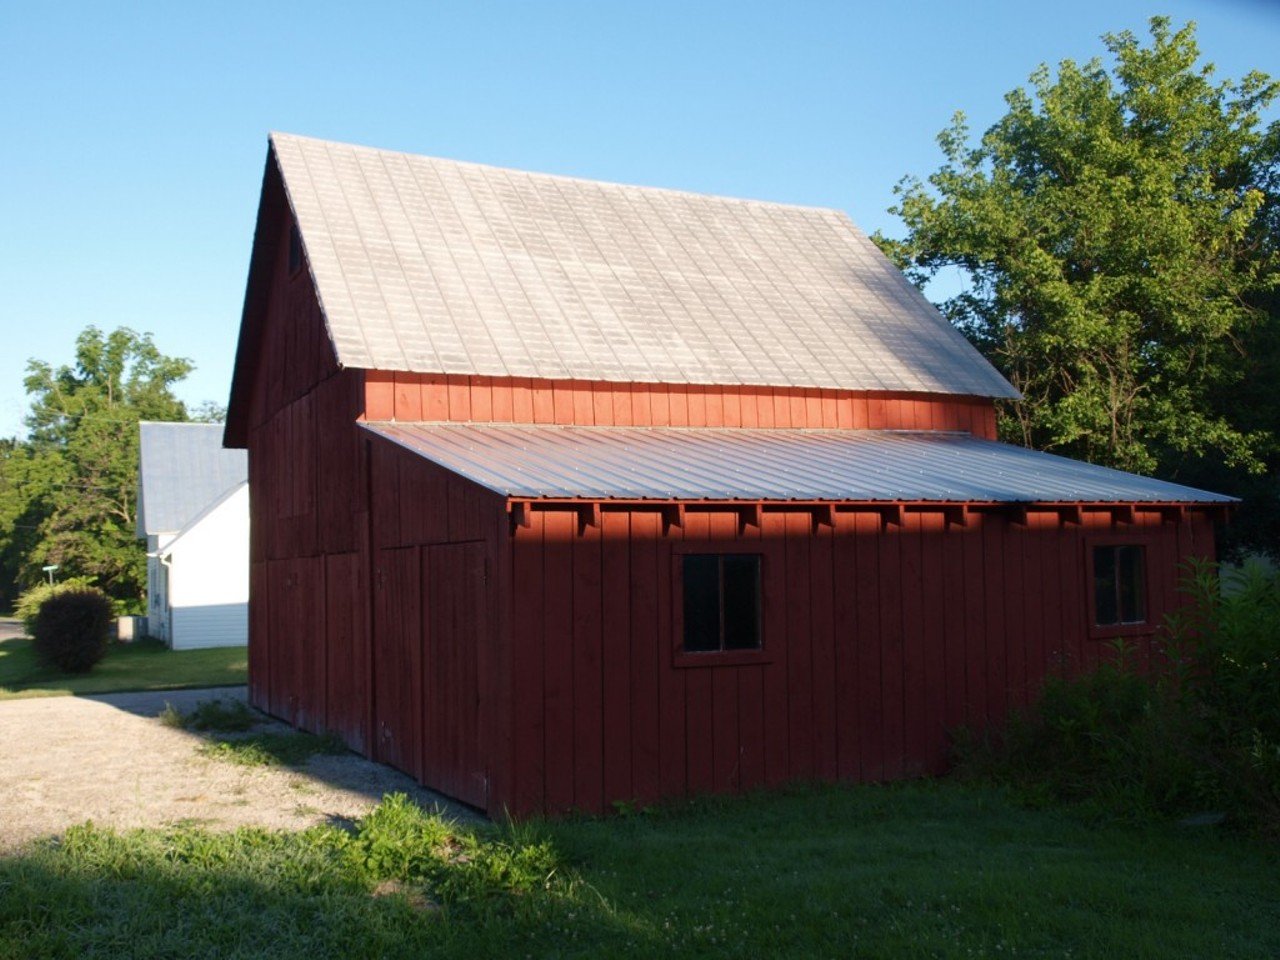 The Savacoal Barn